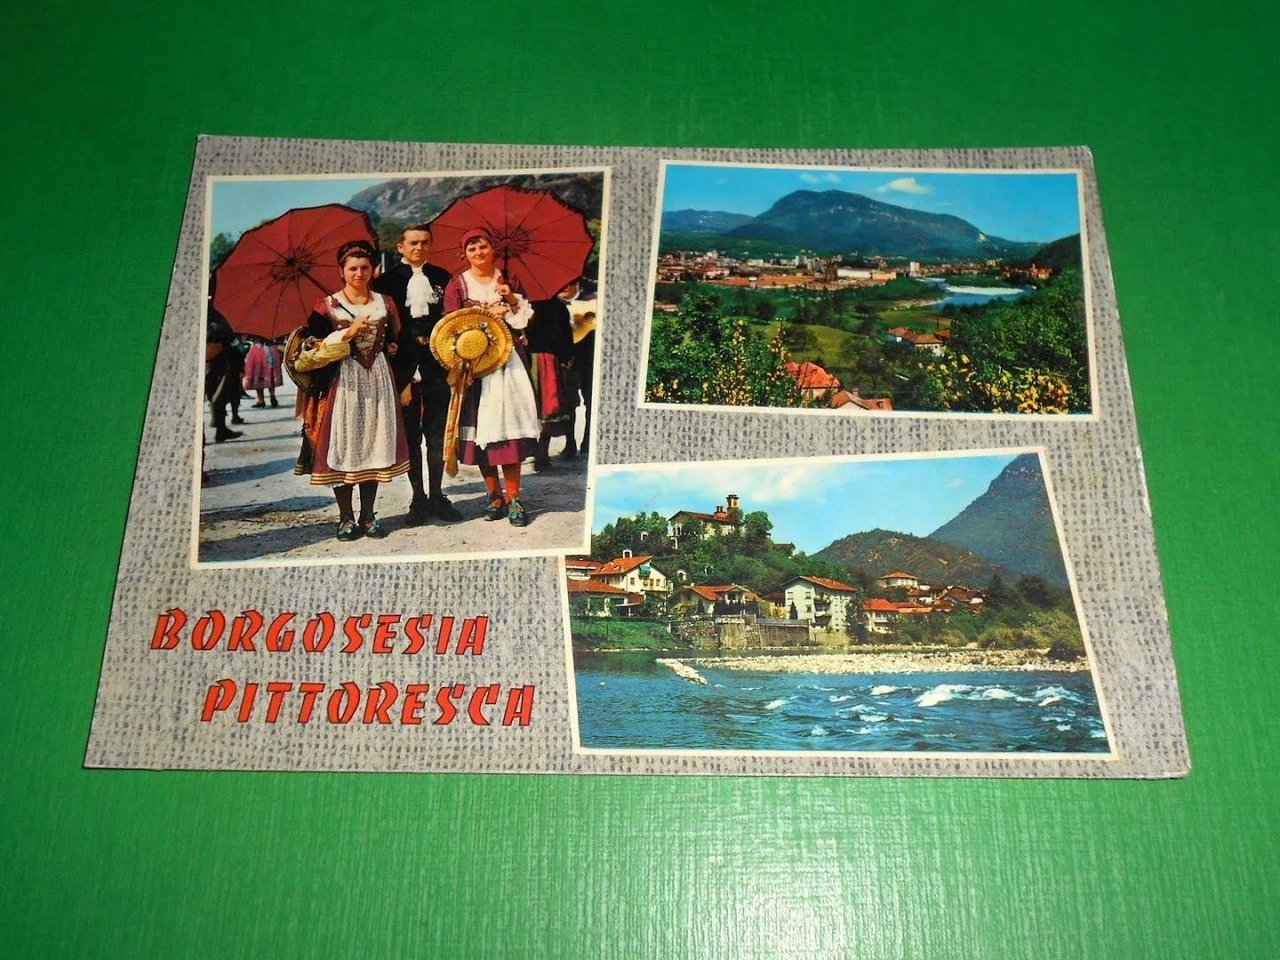 Cartolina Borgosesia pittoresca - Vedute diverse 1965 ca.